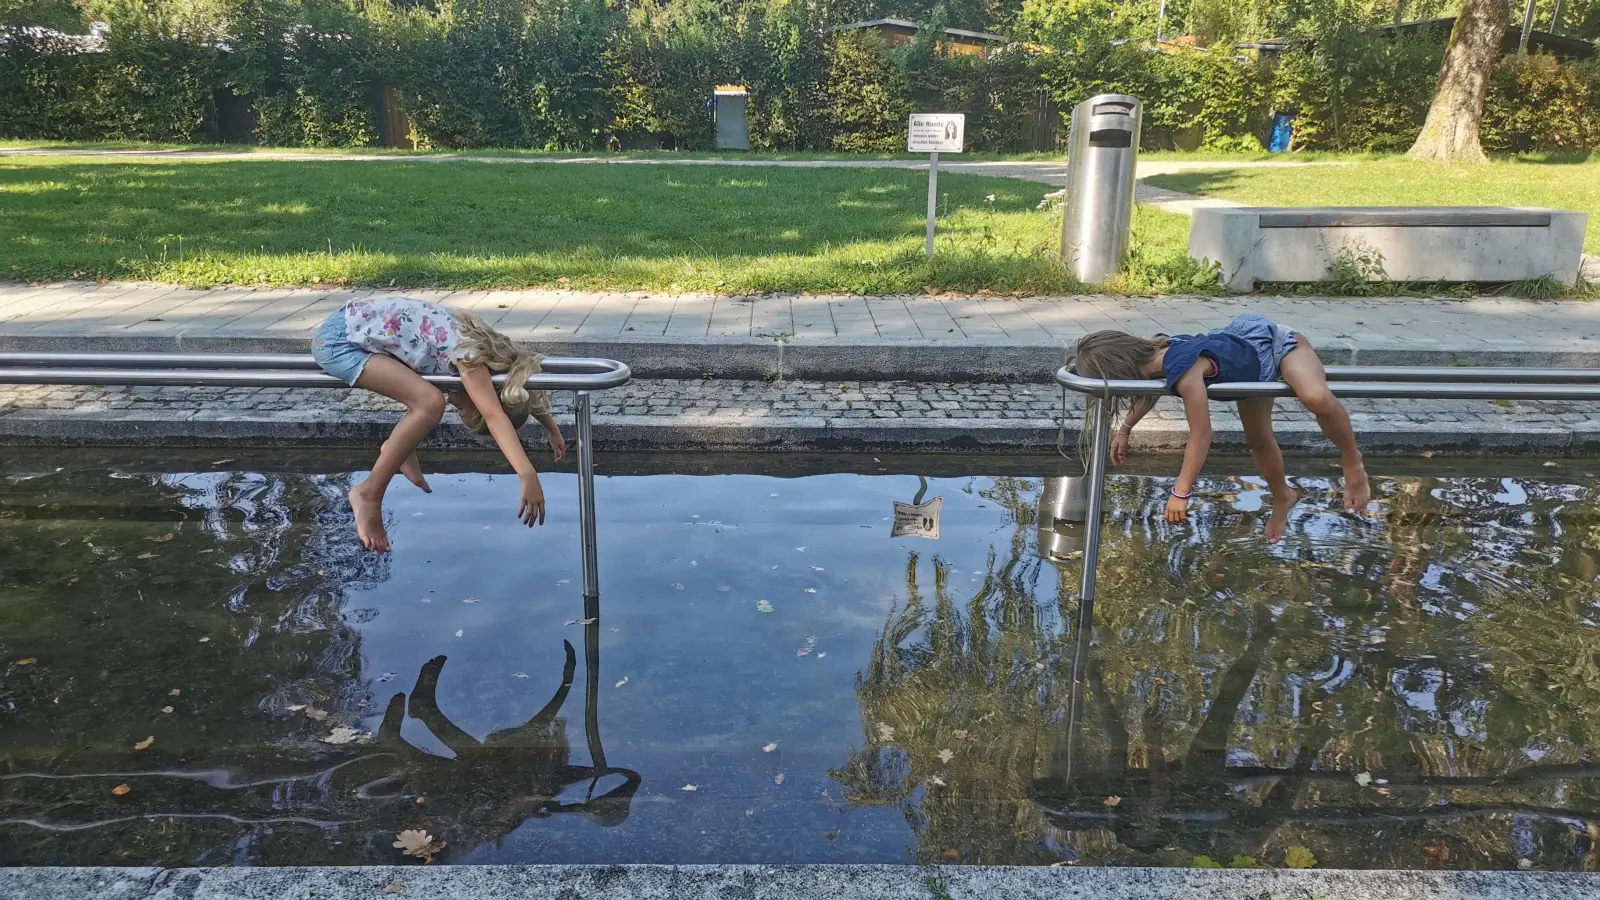 Nochmal richtig Abhängen, bevor die Schule losgeht. Die beiden genießen den letzten Ferientag am Kneippbecken in Aichach. (Foto: Barbara Steiger)